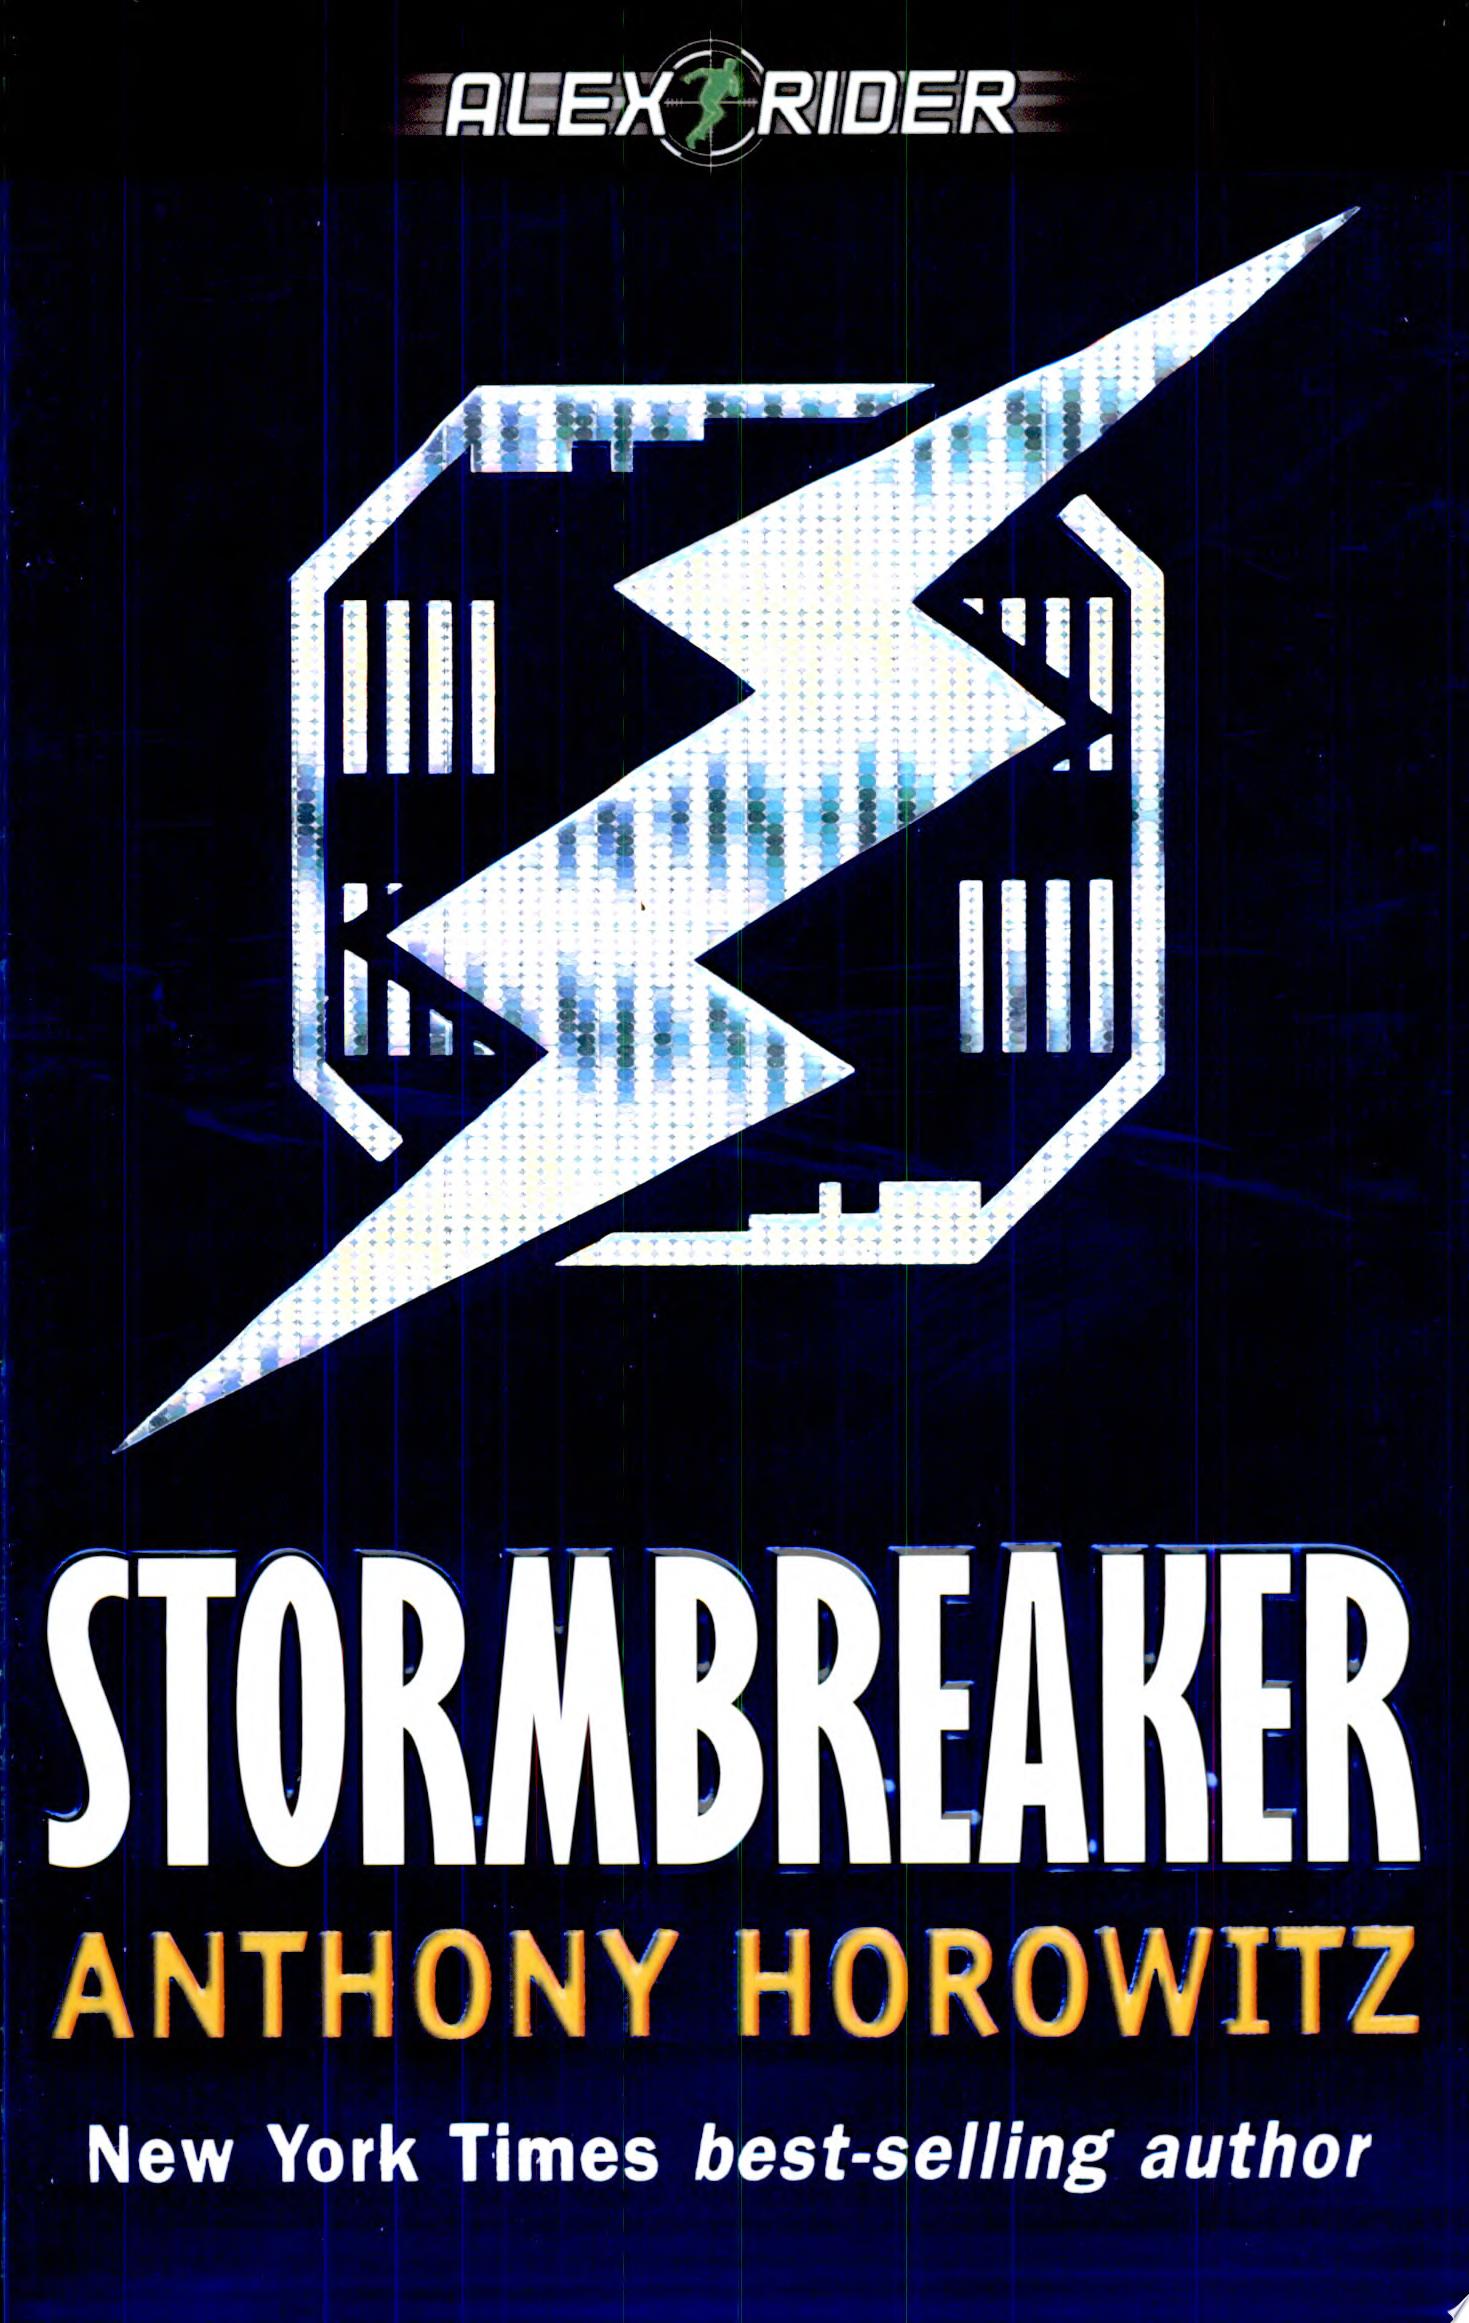 Image for "Stormbreaker"